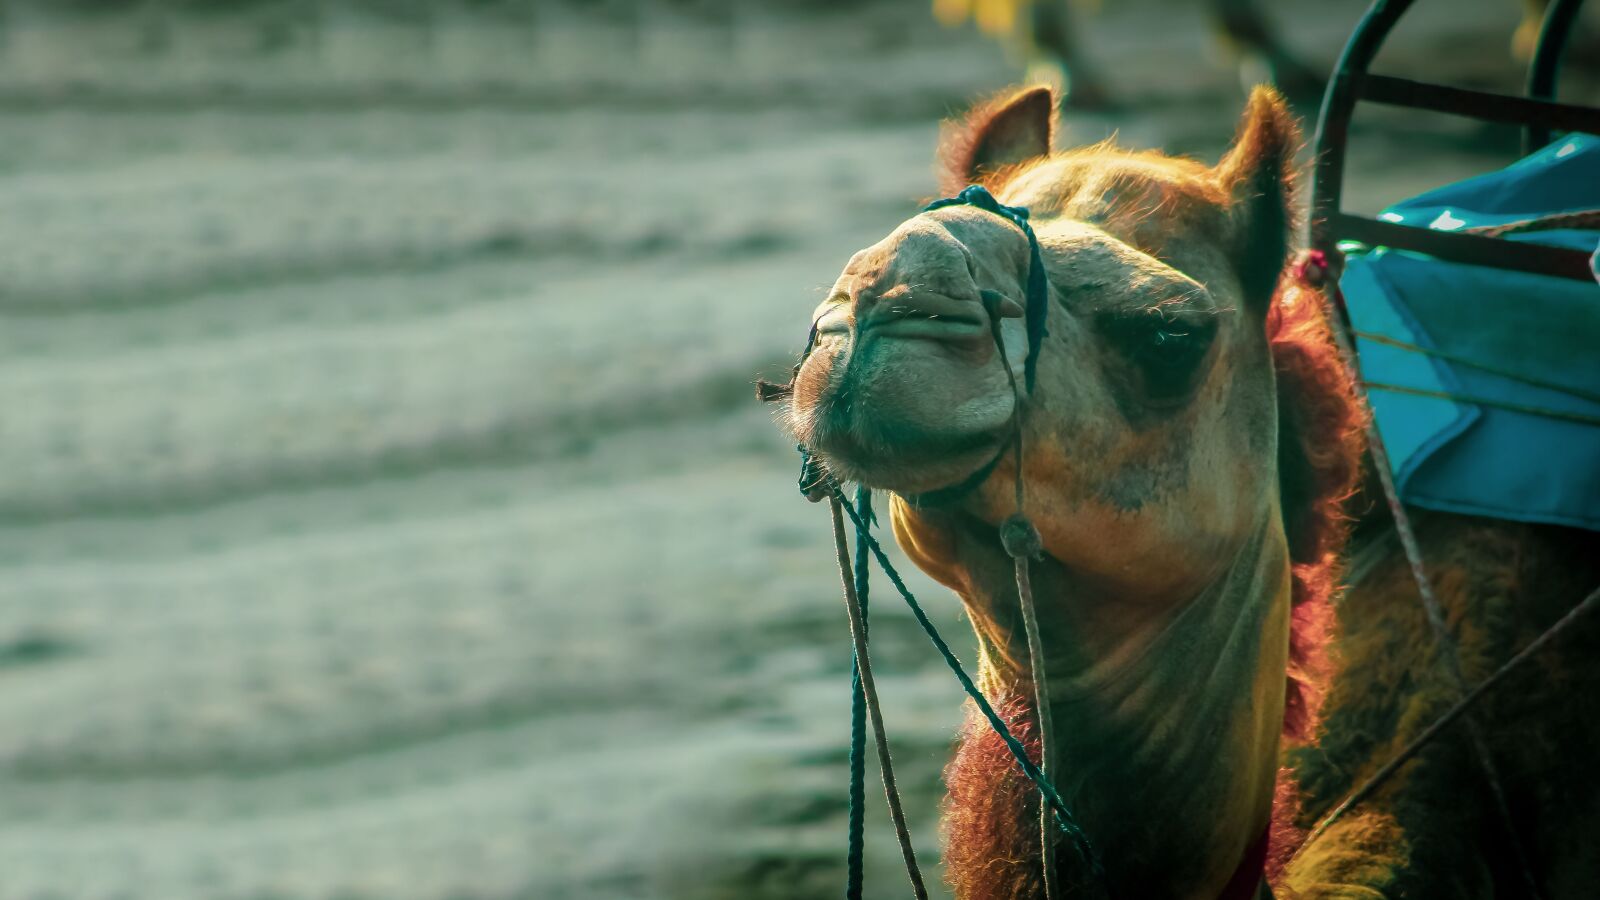 Canon EOS 1200D (EOS Rebel T5 / EOS Kiss X70 / EOS Hi) sample photo. Animal, camel, desert photography